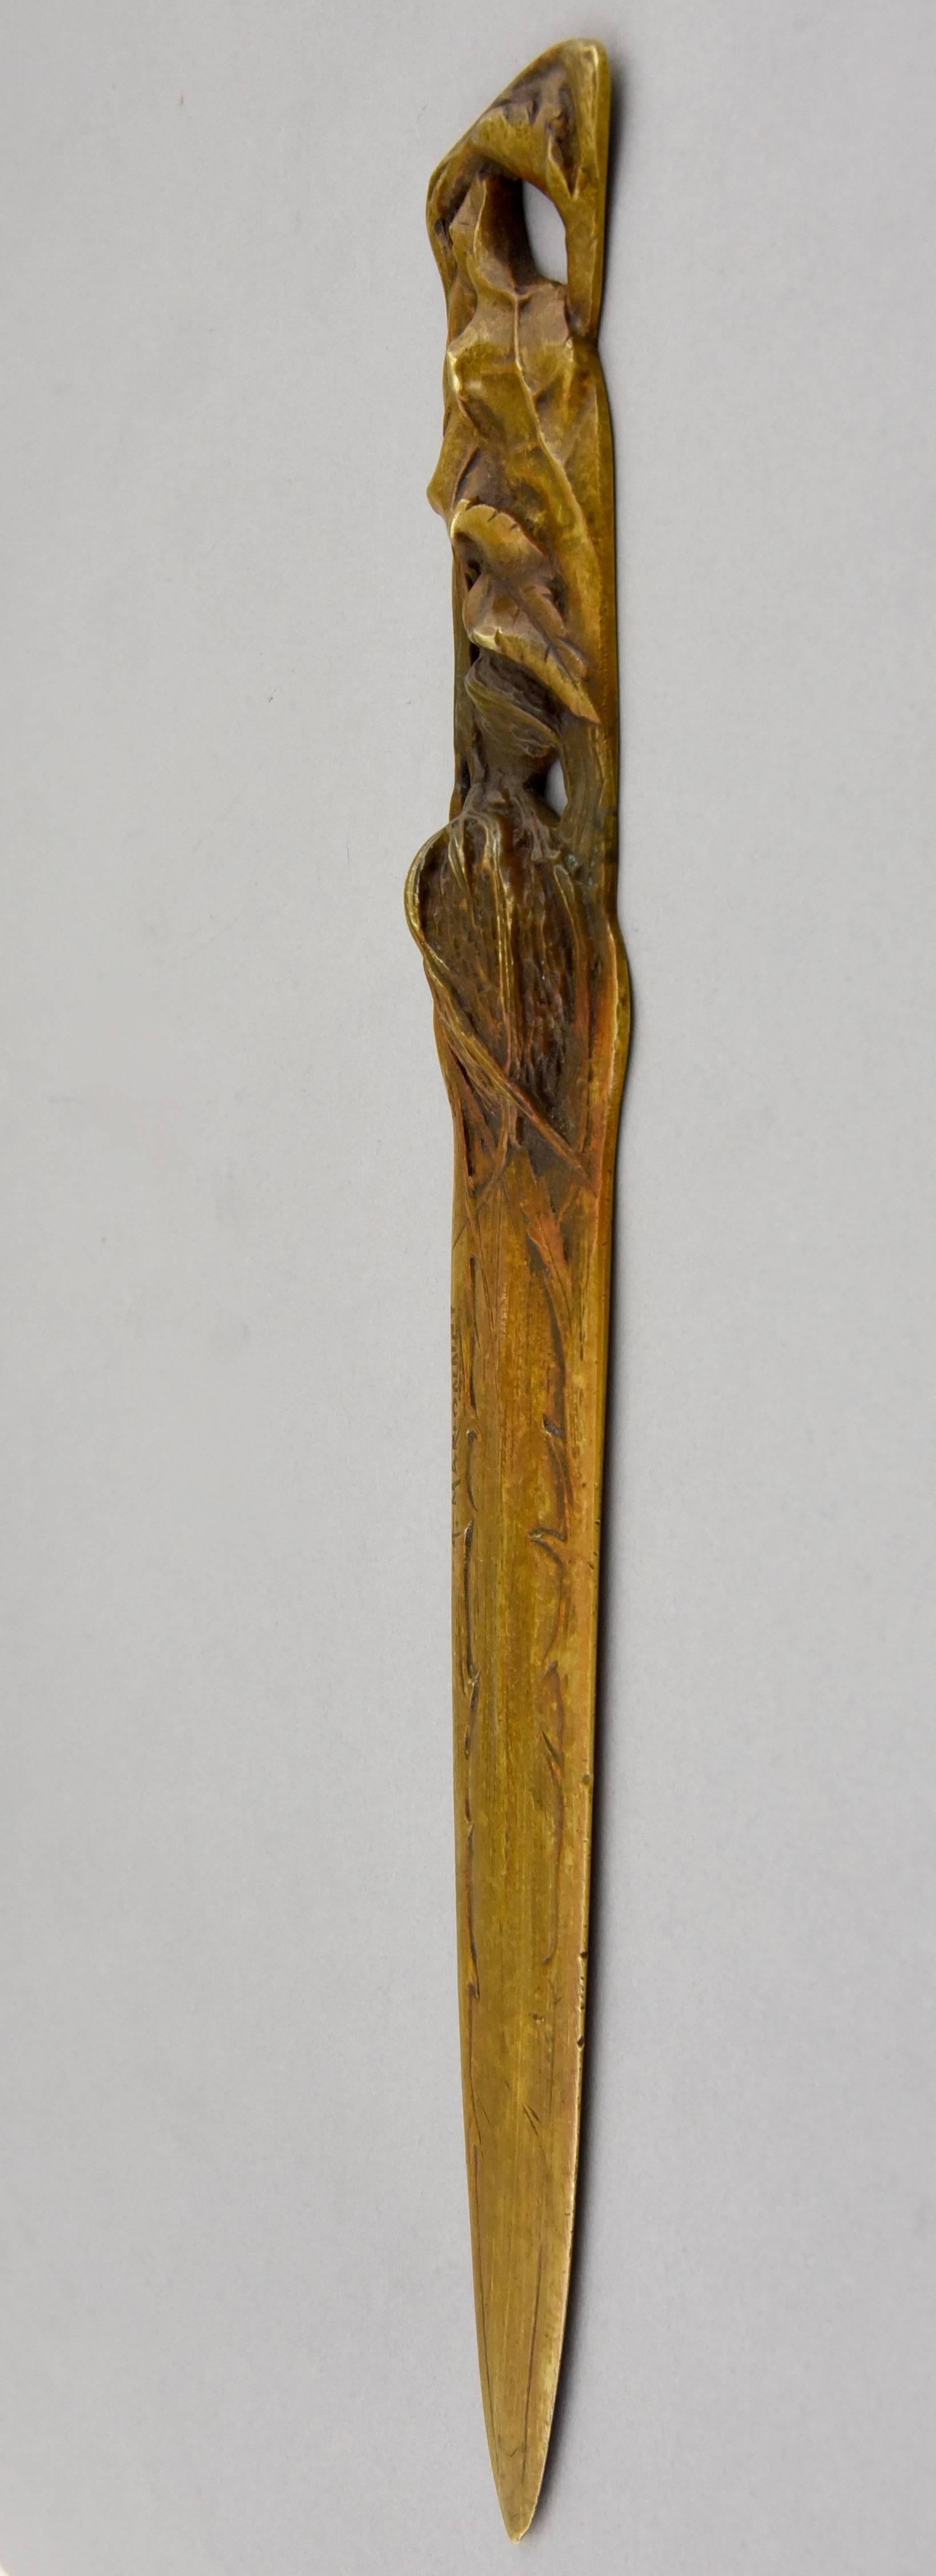 Description:  Art Nouveau bronze thistle bookmark.
Artist/ maker: A. Marionnet.
Signature/ marks: A. Marionnet,  France.
Style:  Art Nouveau.
Date: circa 1900.
Material: Bronze, patinated.
Origin: France,
Size: 
L. 12.2 inch. X W. 1.7